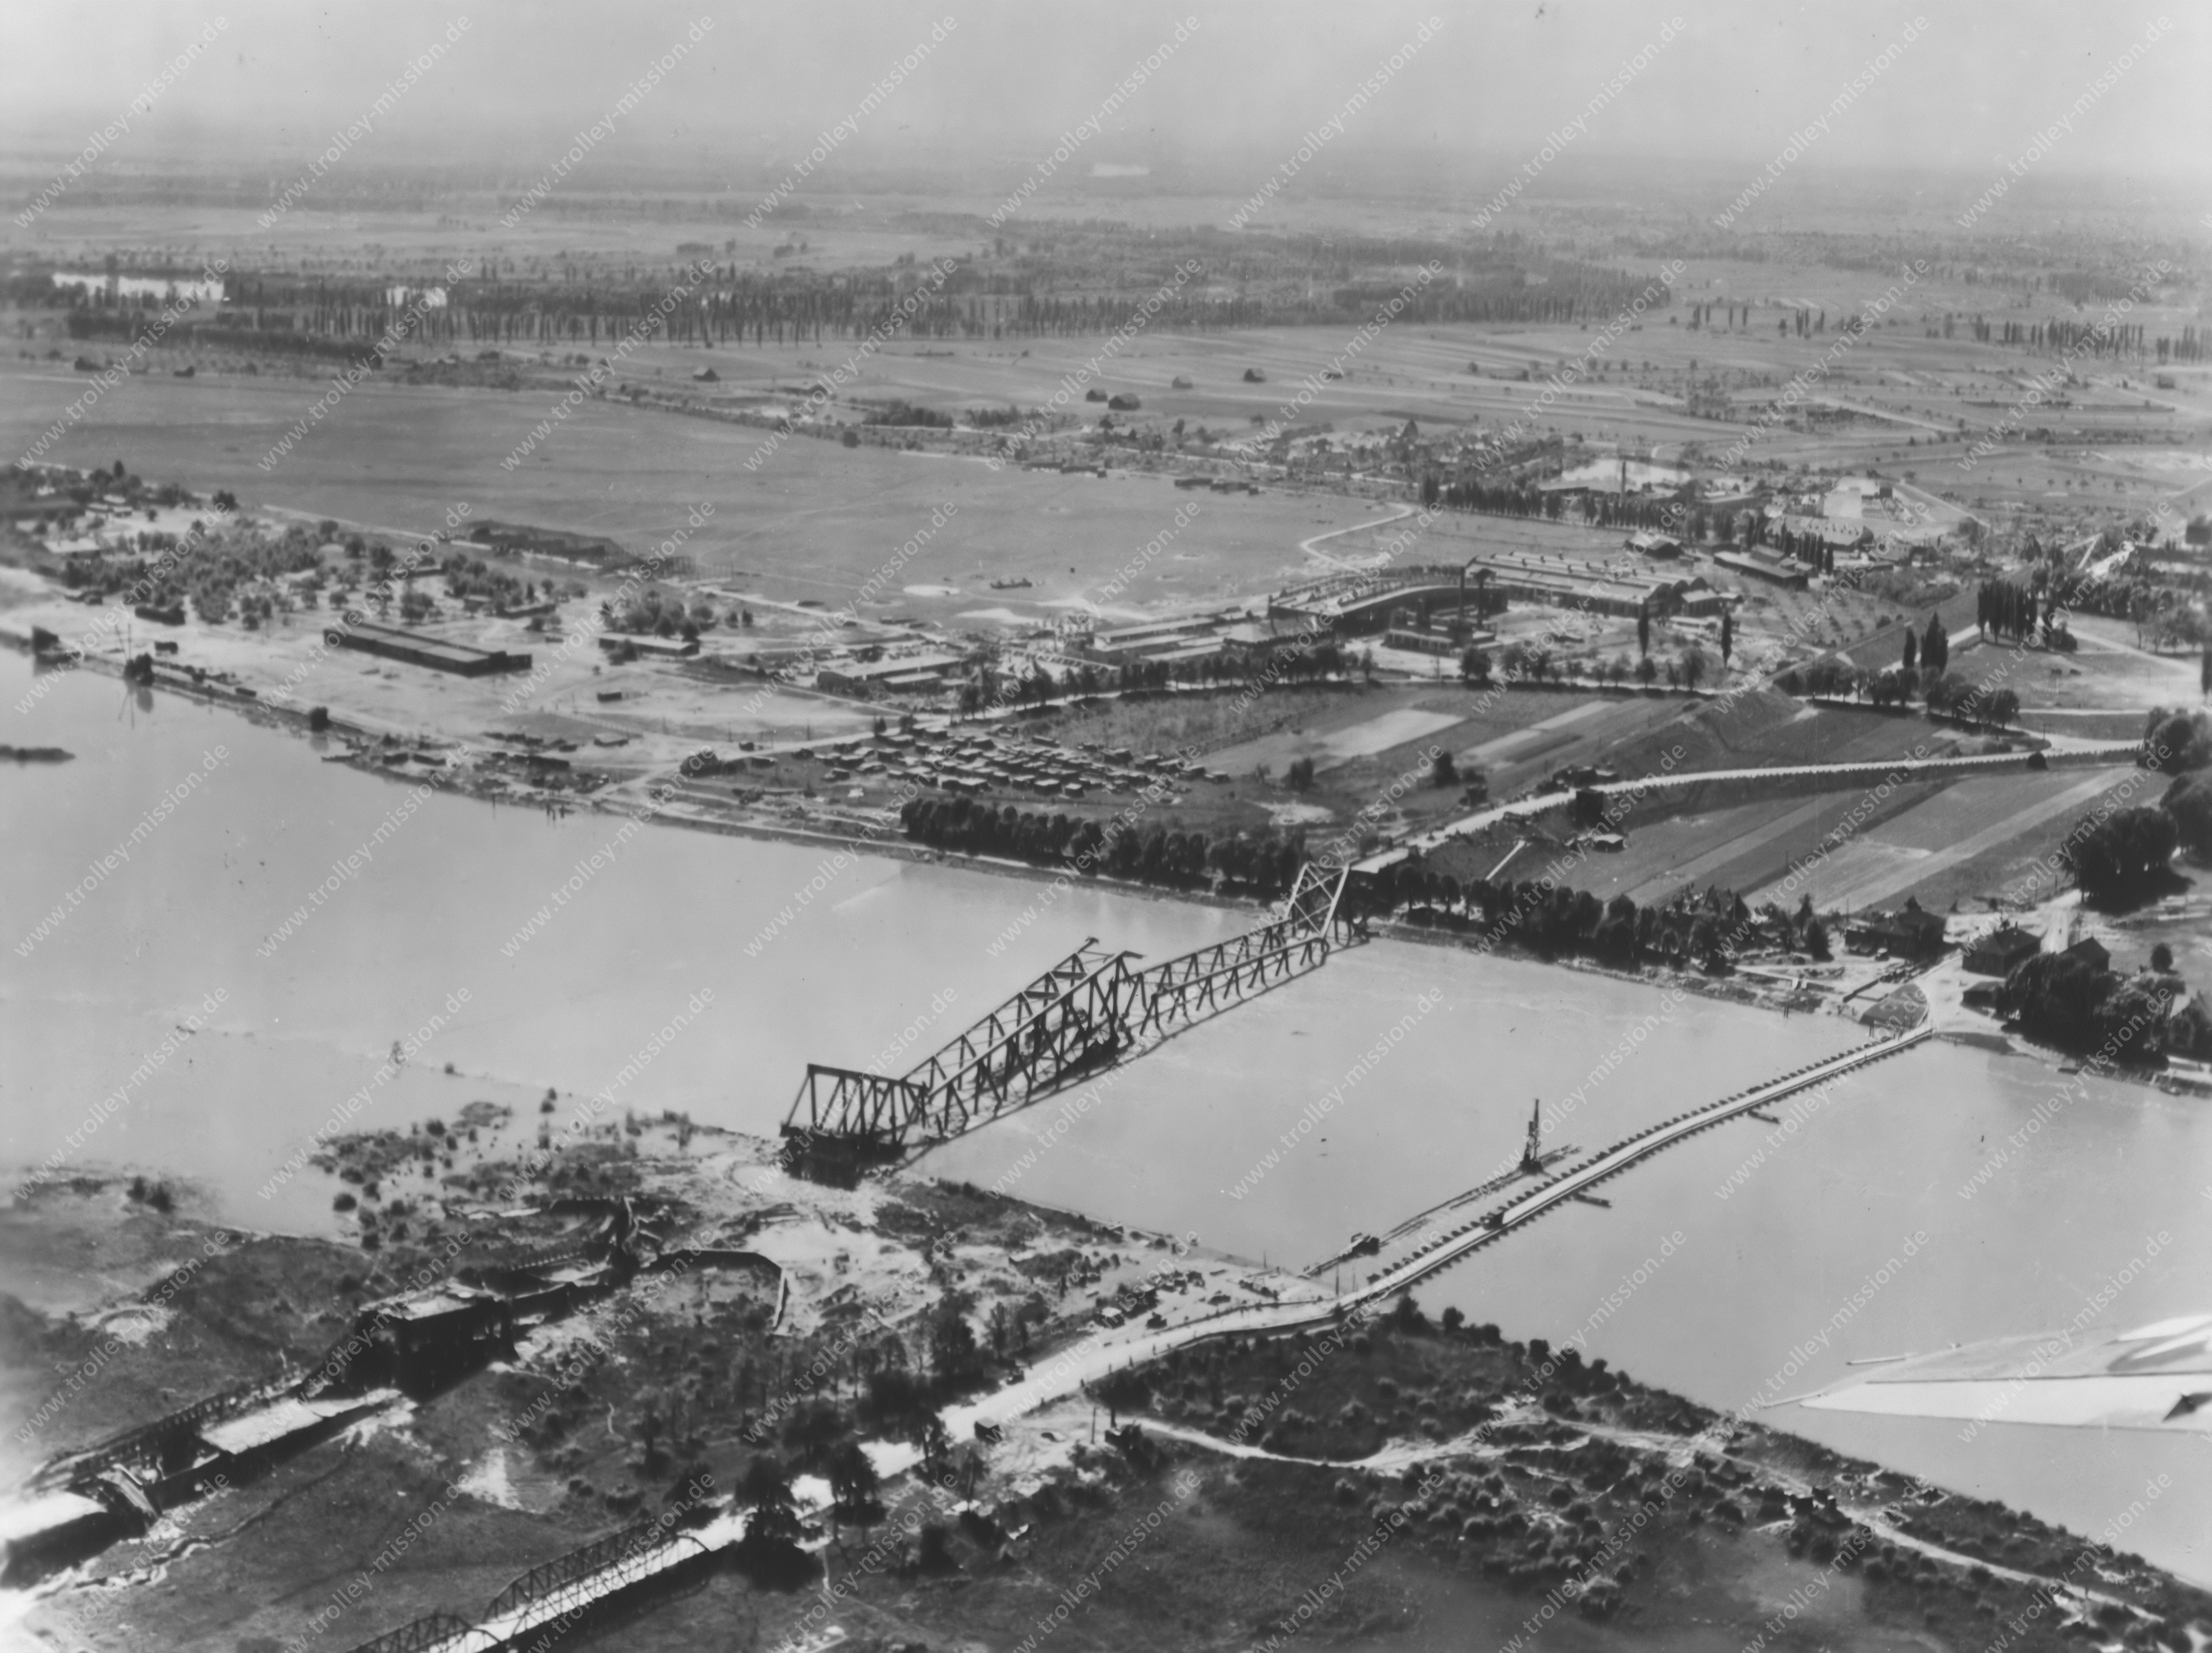 Luftbild der alten Rheinbrücke in Speyer im Zweiten Weltkrieg